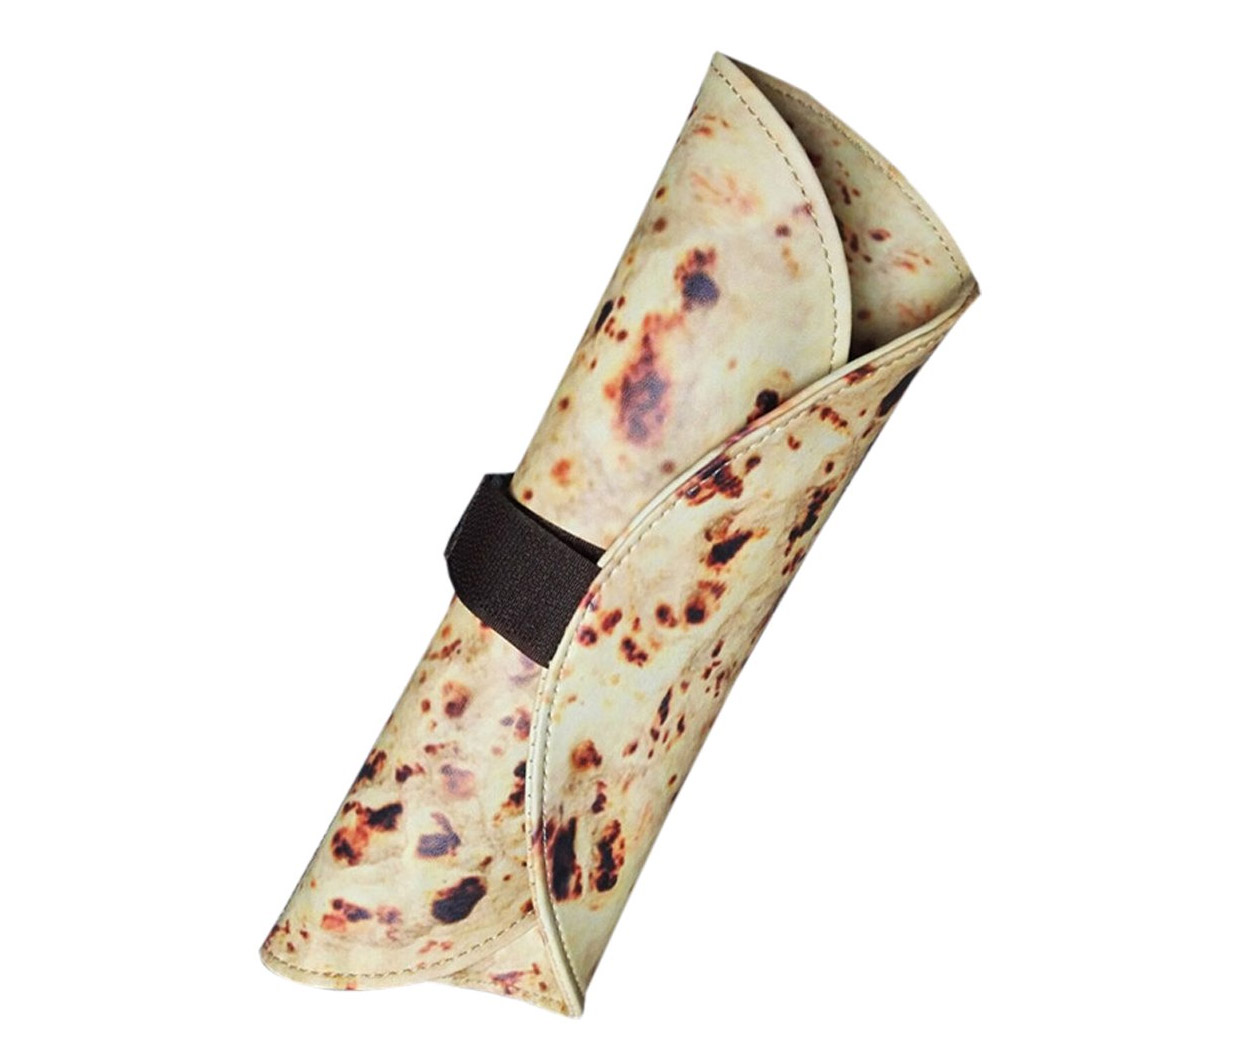 Pita Bread Art Supply Holder - Burrito roll pencil case